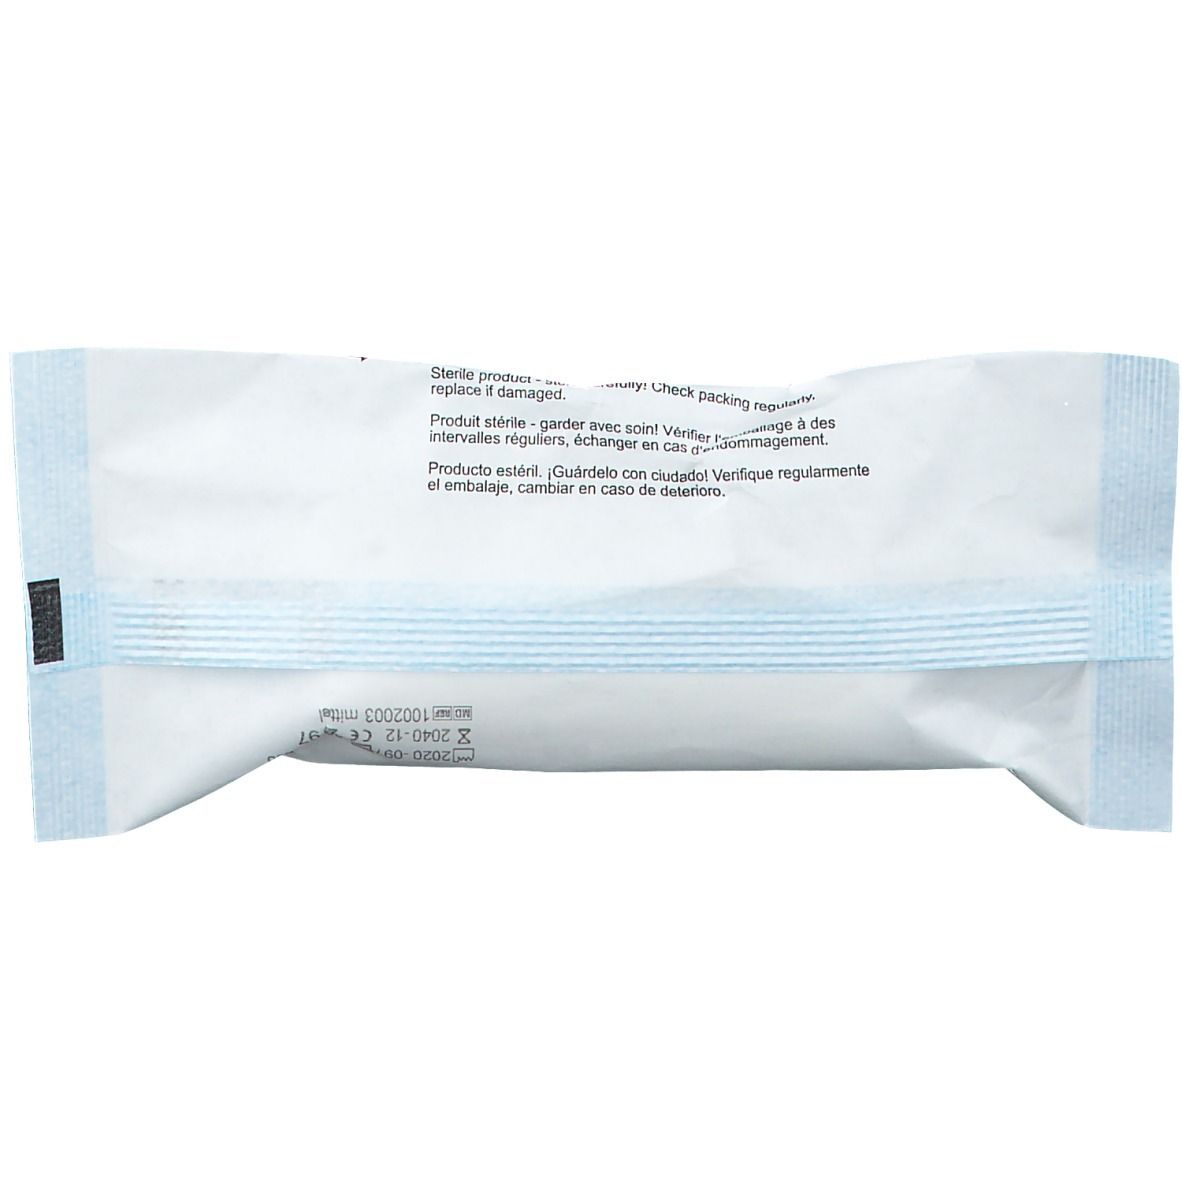 DermaCare® Verbandspäckchen DIN13151 mittel